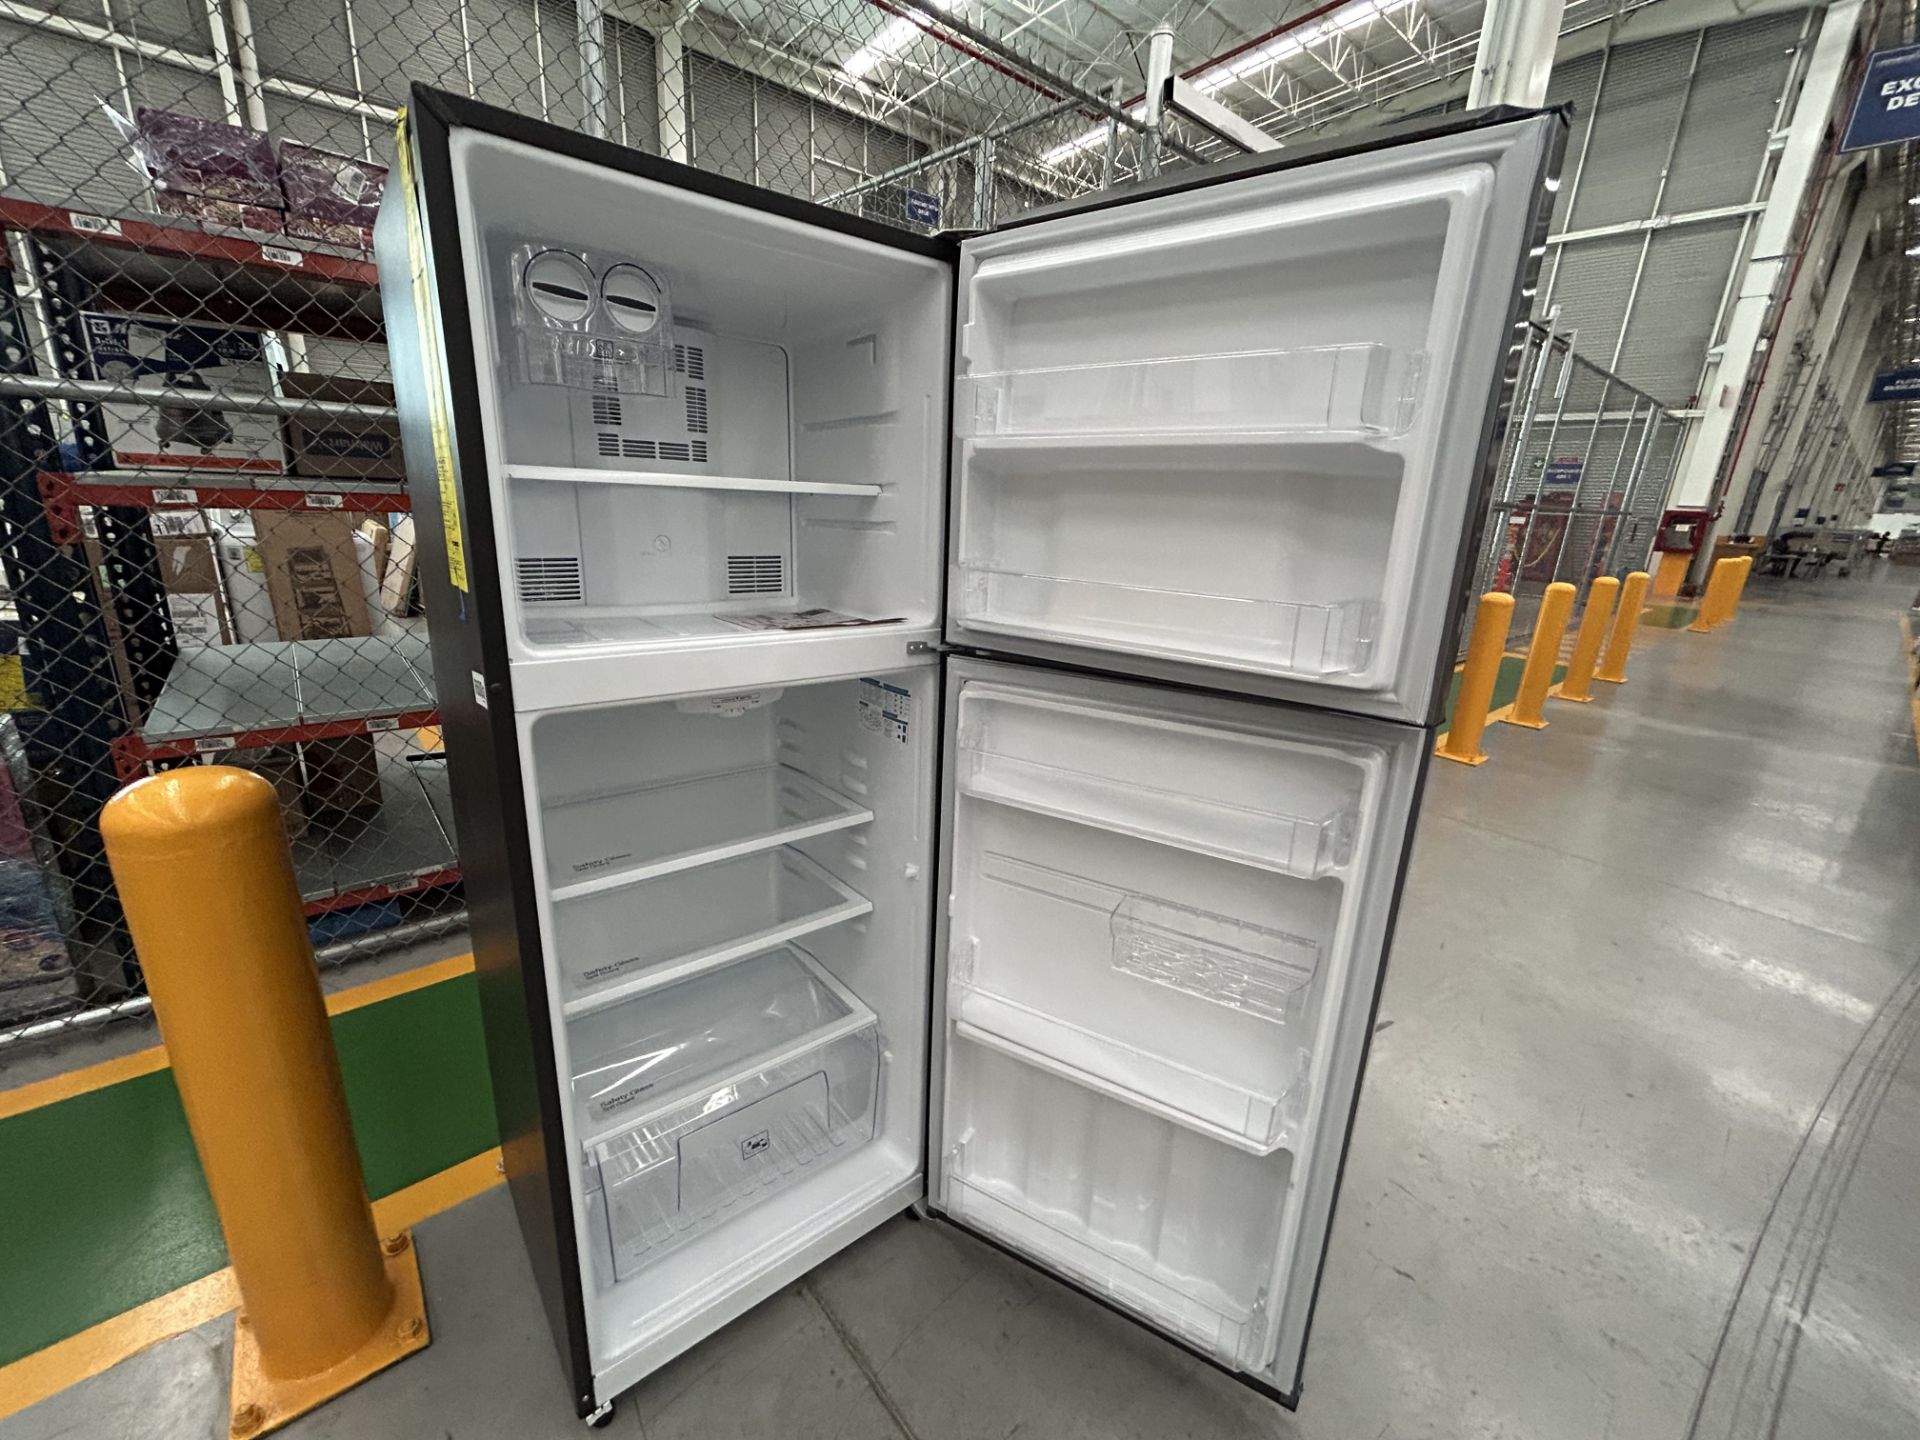 Lote de 2 refrigeradores contiene: 1 refrigerador Marca MABE, Modelo RME360FX, Serie 06730, Color G - Image 4 of 12